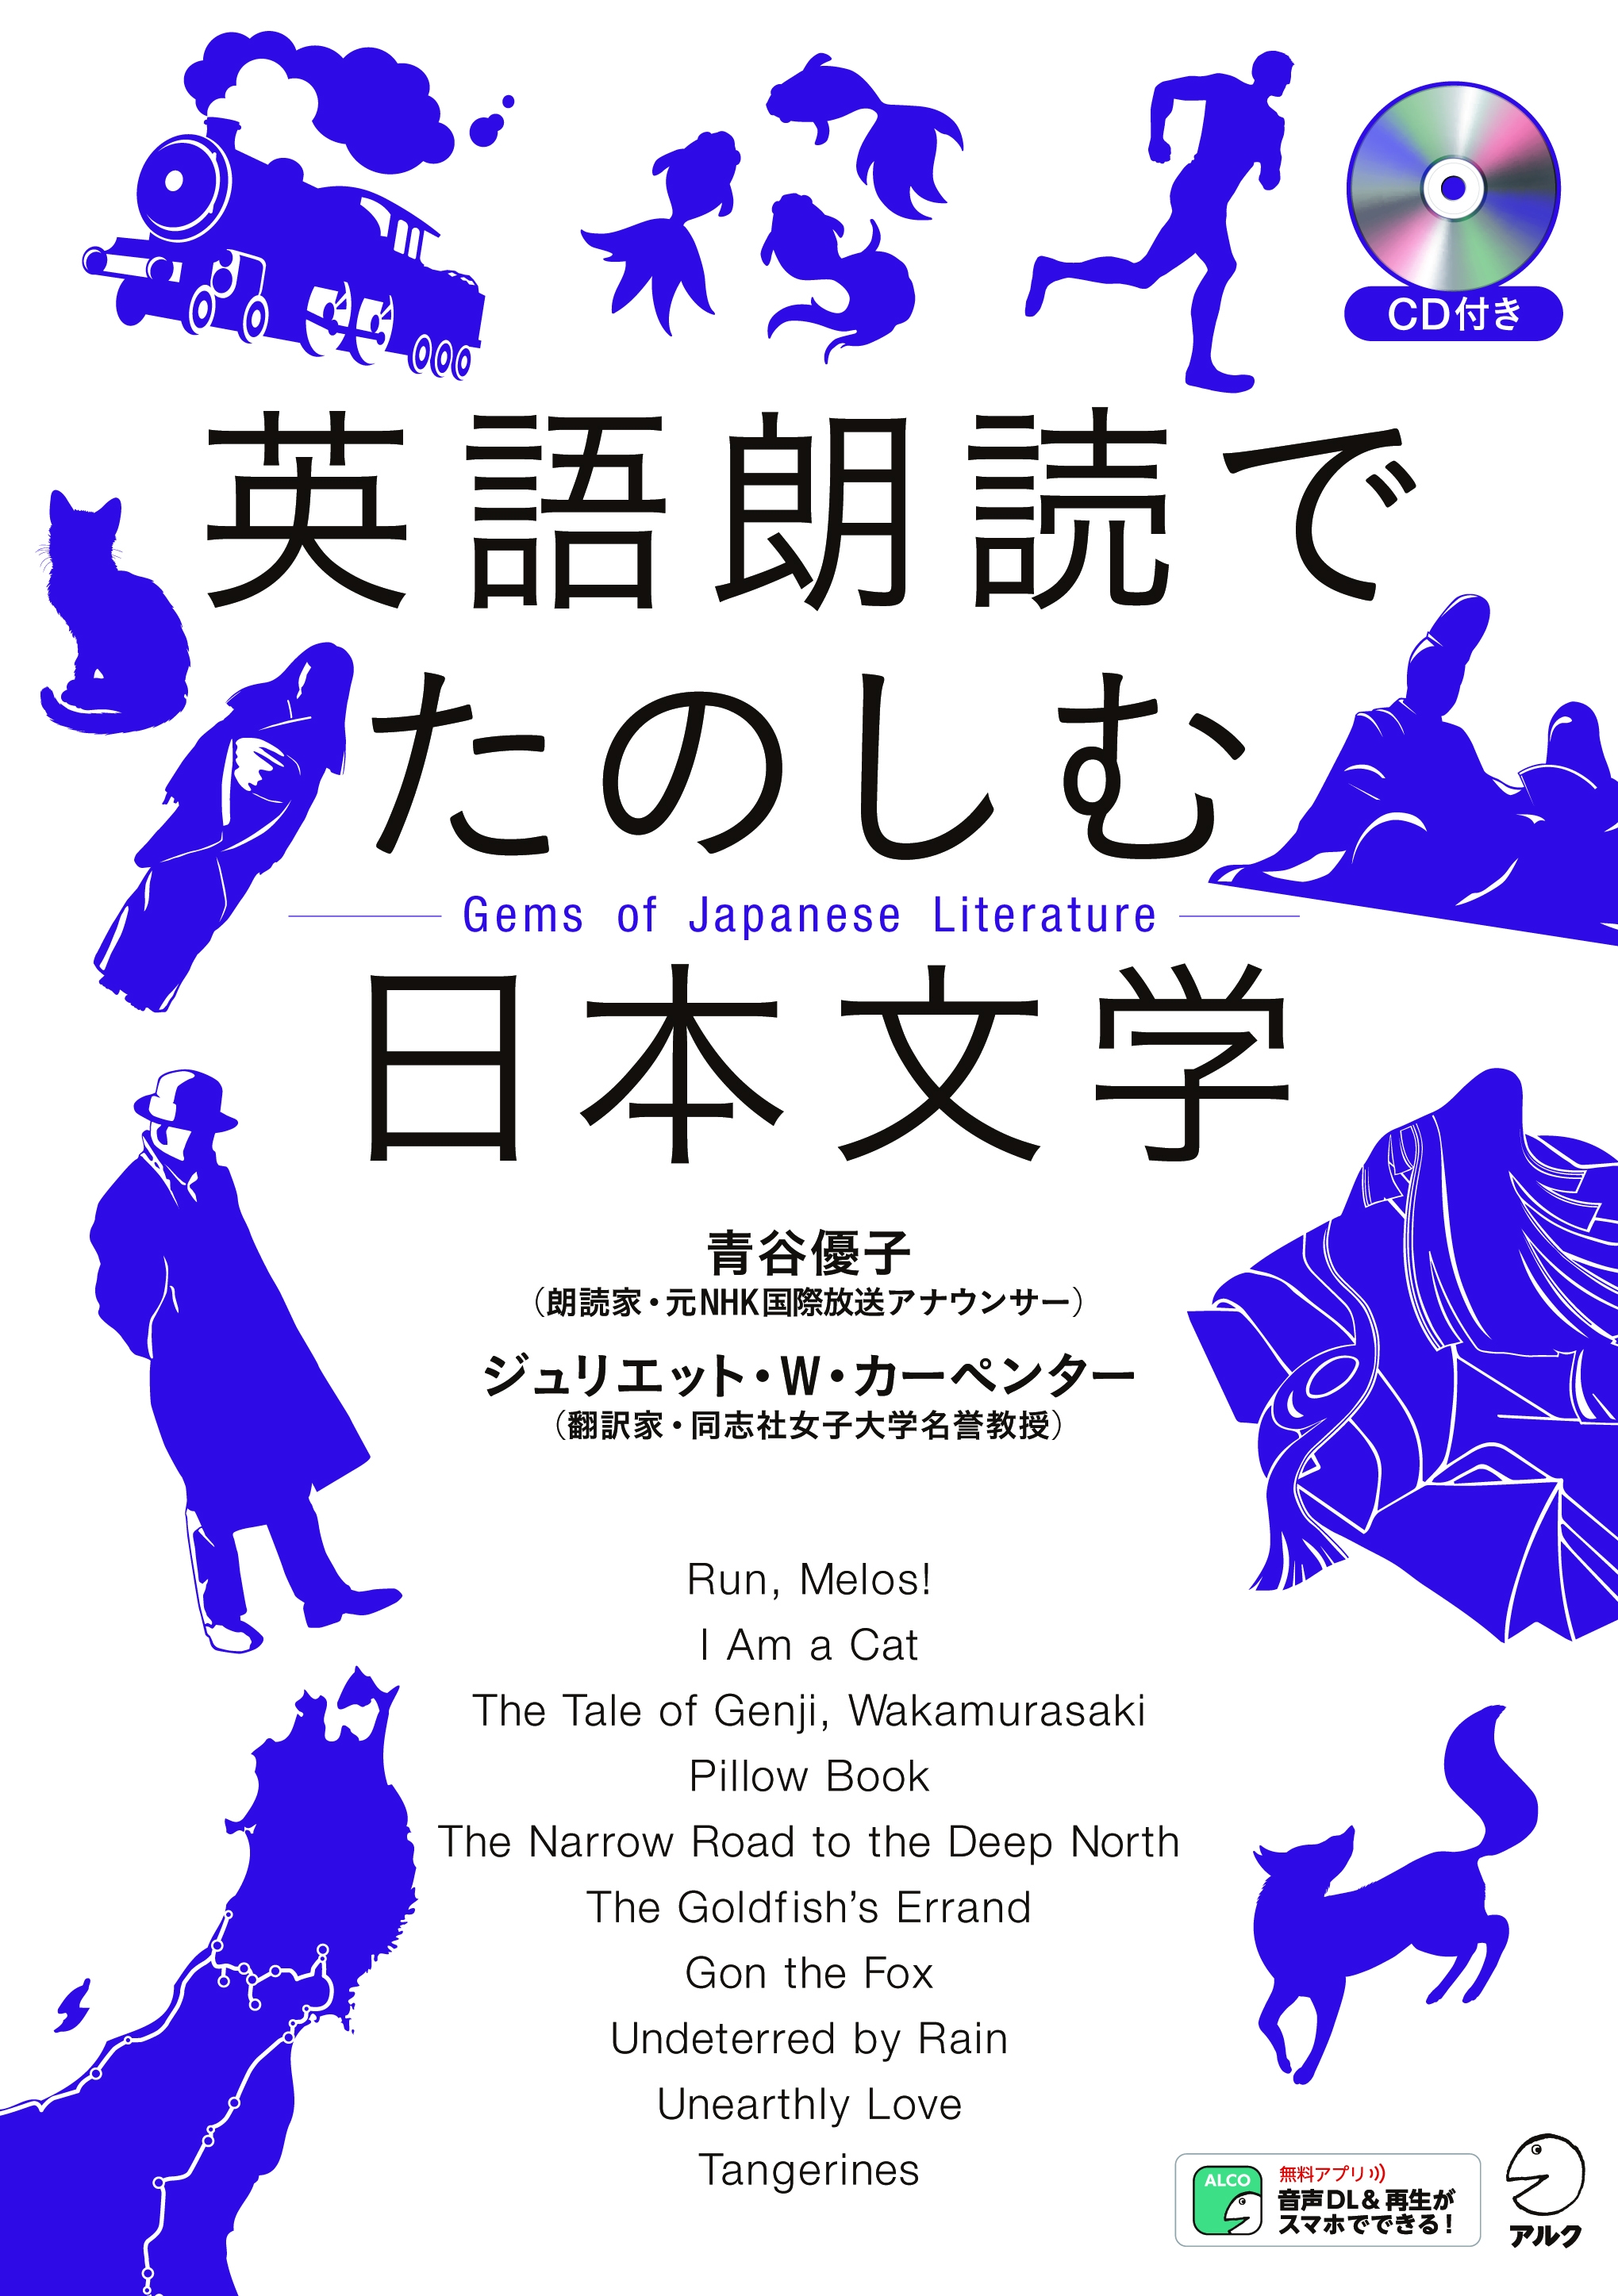 英訳 朗読で再発見 世界に聞かせたい日本がここにある 英語朗読でたのしむ日本文学 4月26日発売 株式会社アルクのプレスリリース